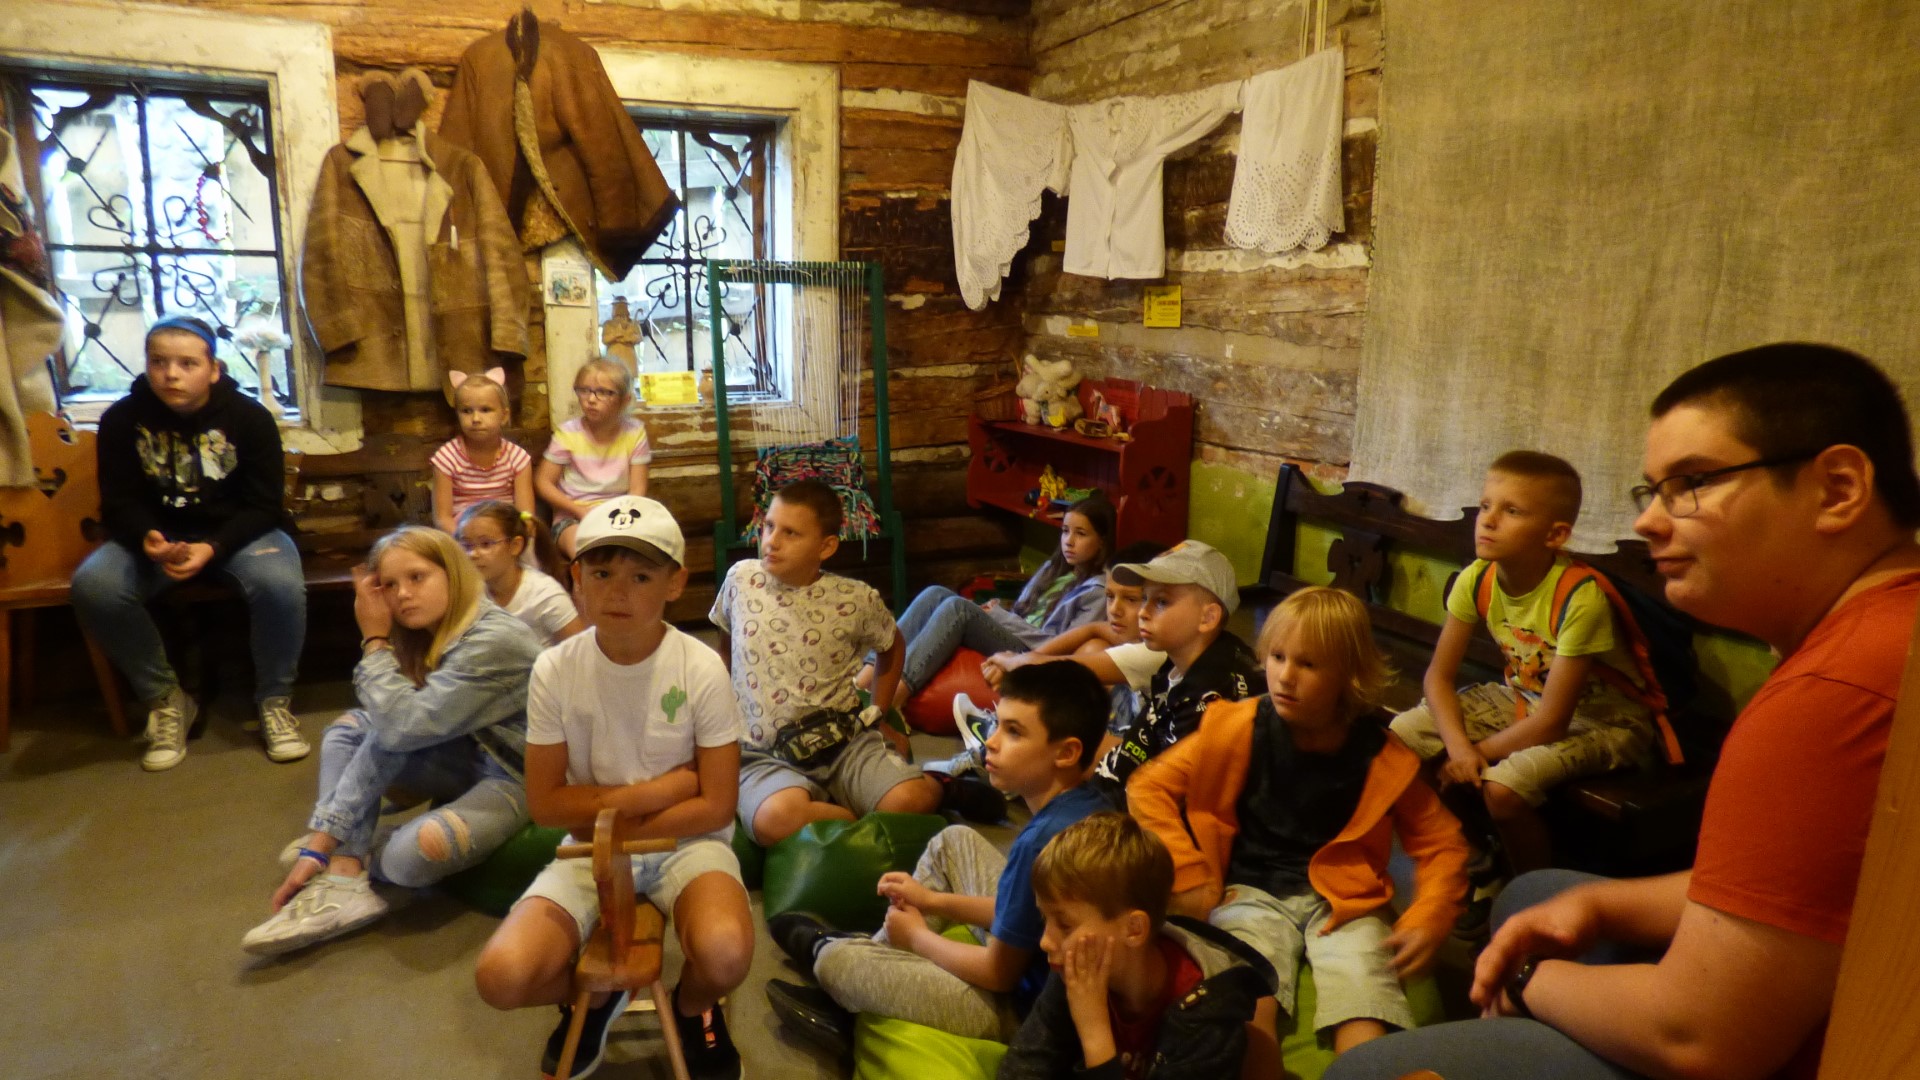 Uczestnicy wycieczki siedzą na podłodze lub ławkach w izbie góralskiej chaty i słuchają opowiadania pani przewodnik.